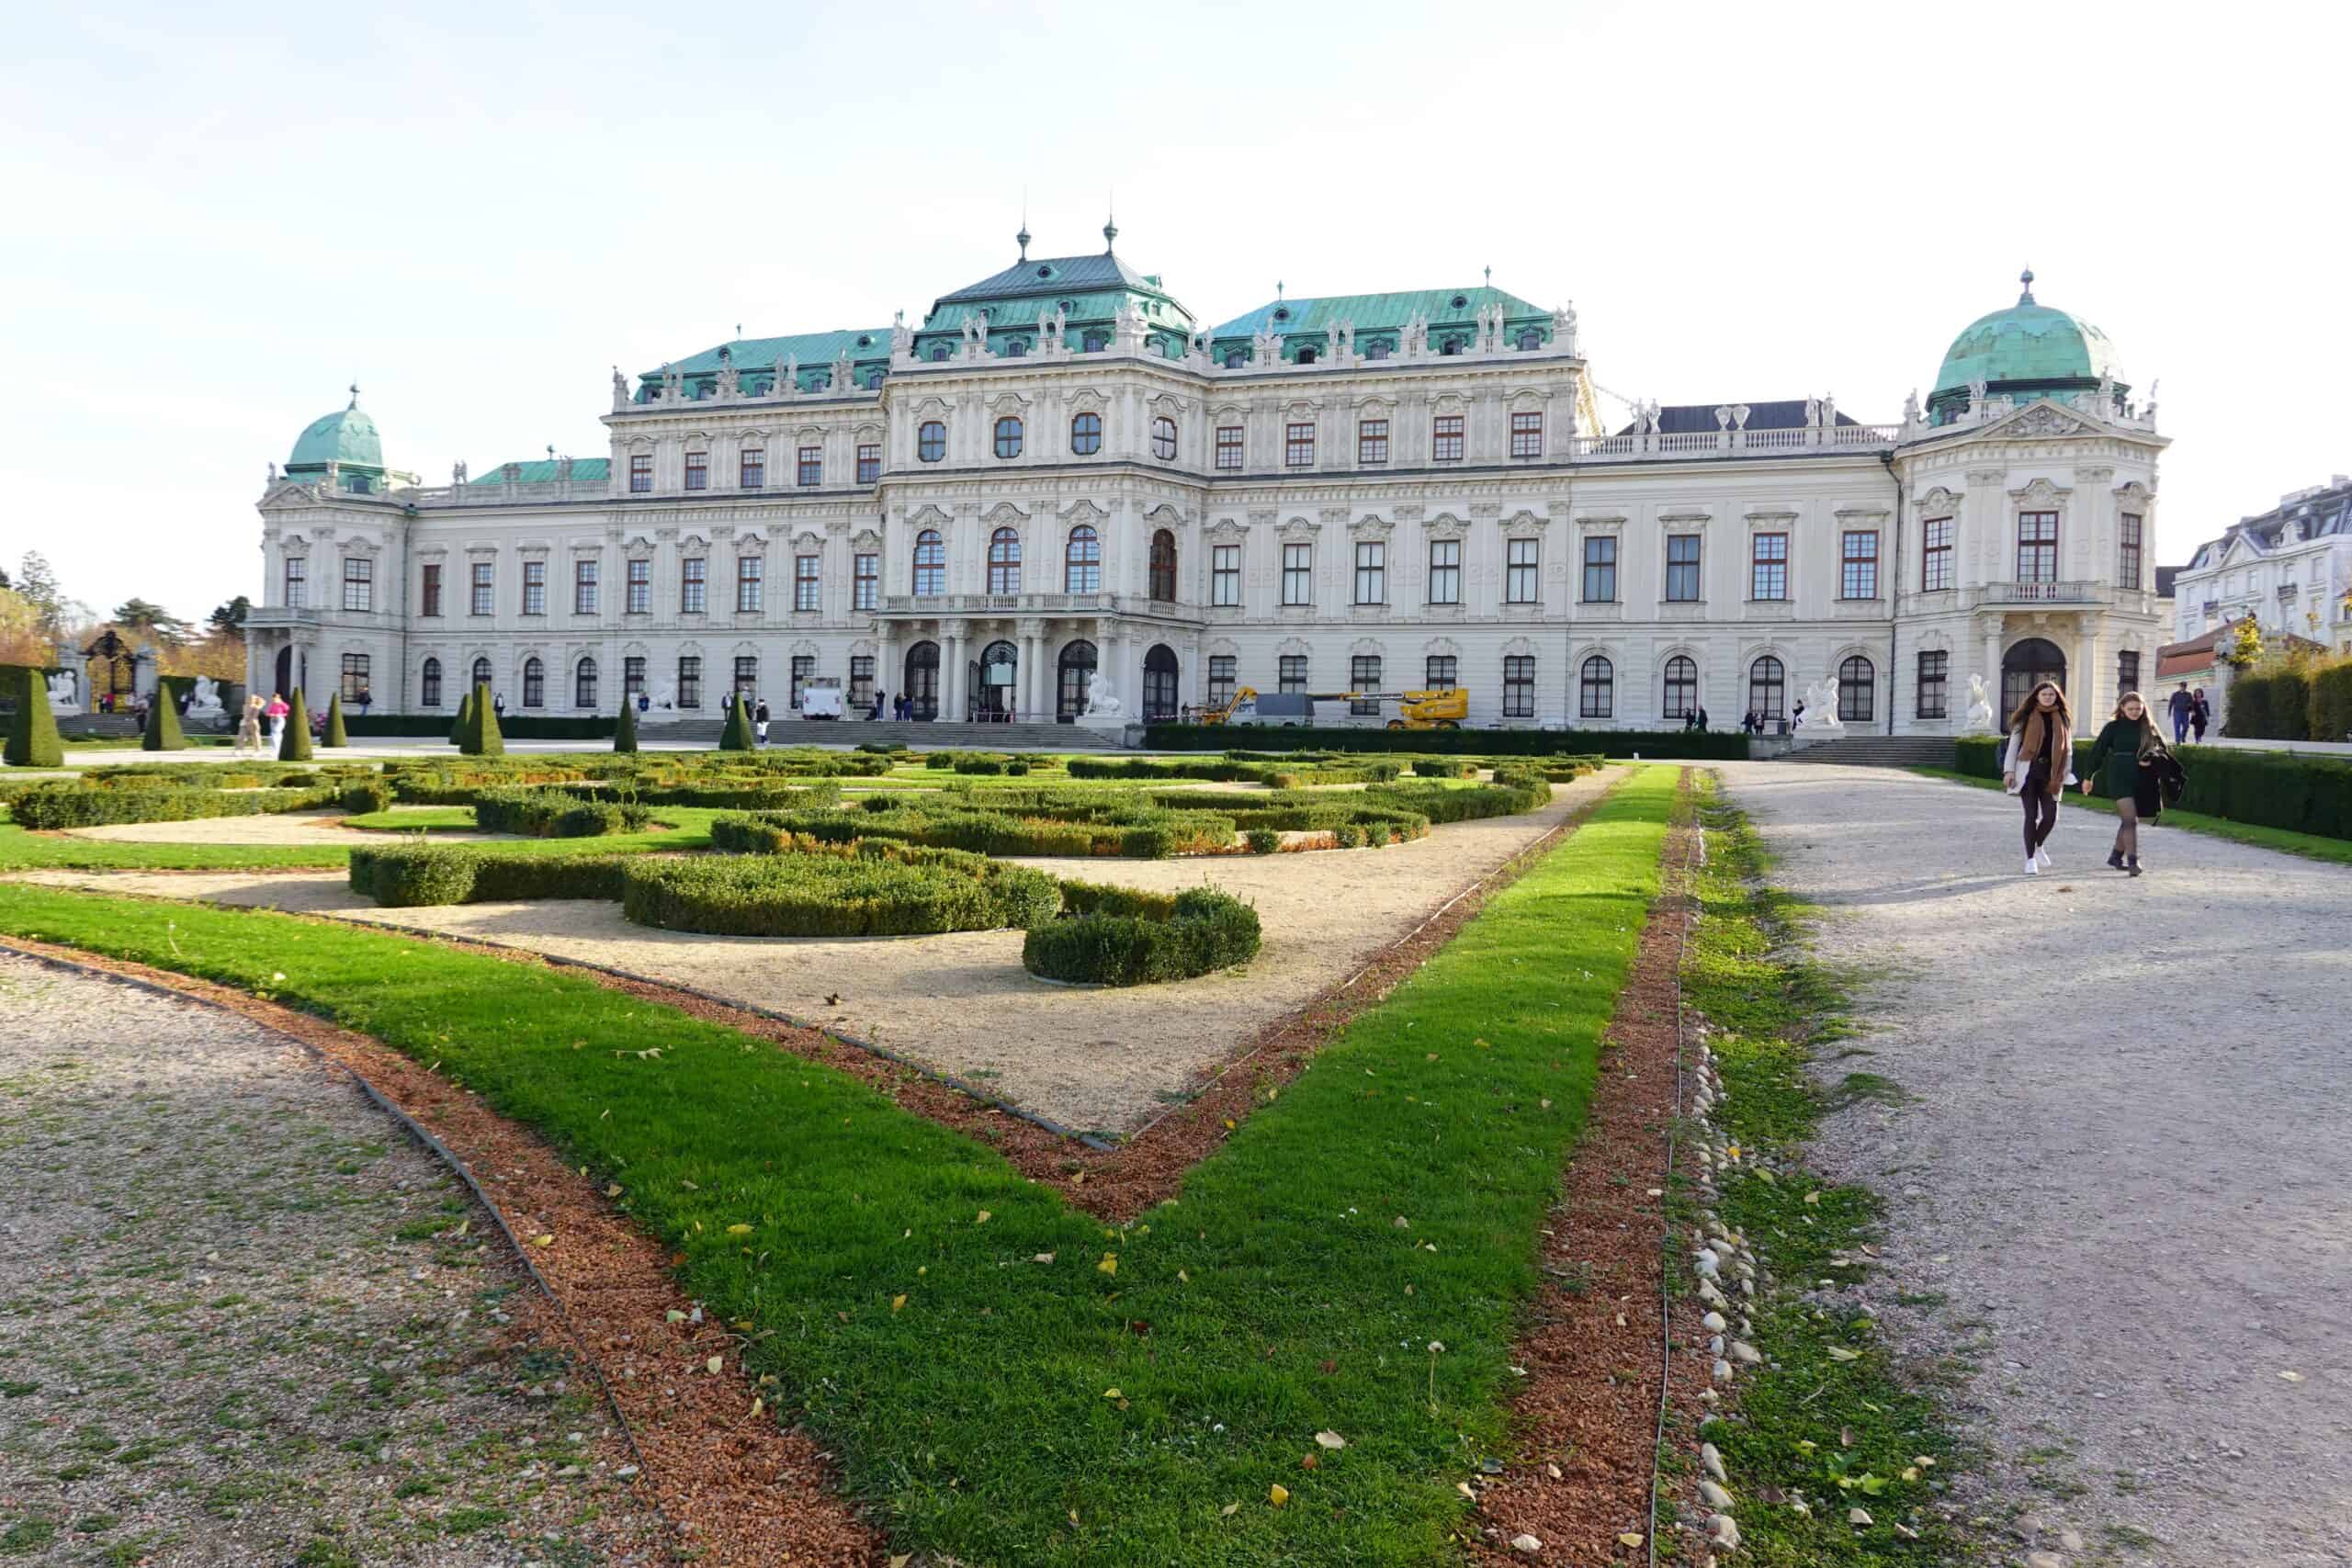 Upper Belvedere Palace in Vienna